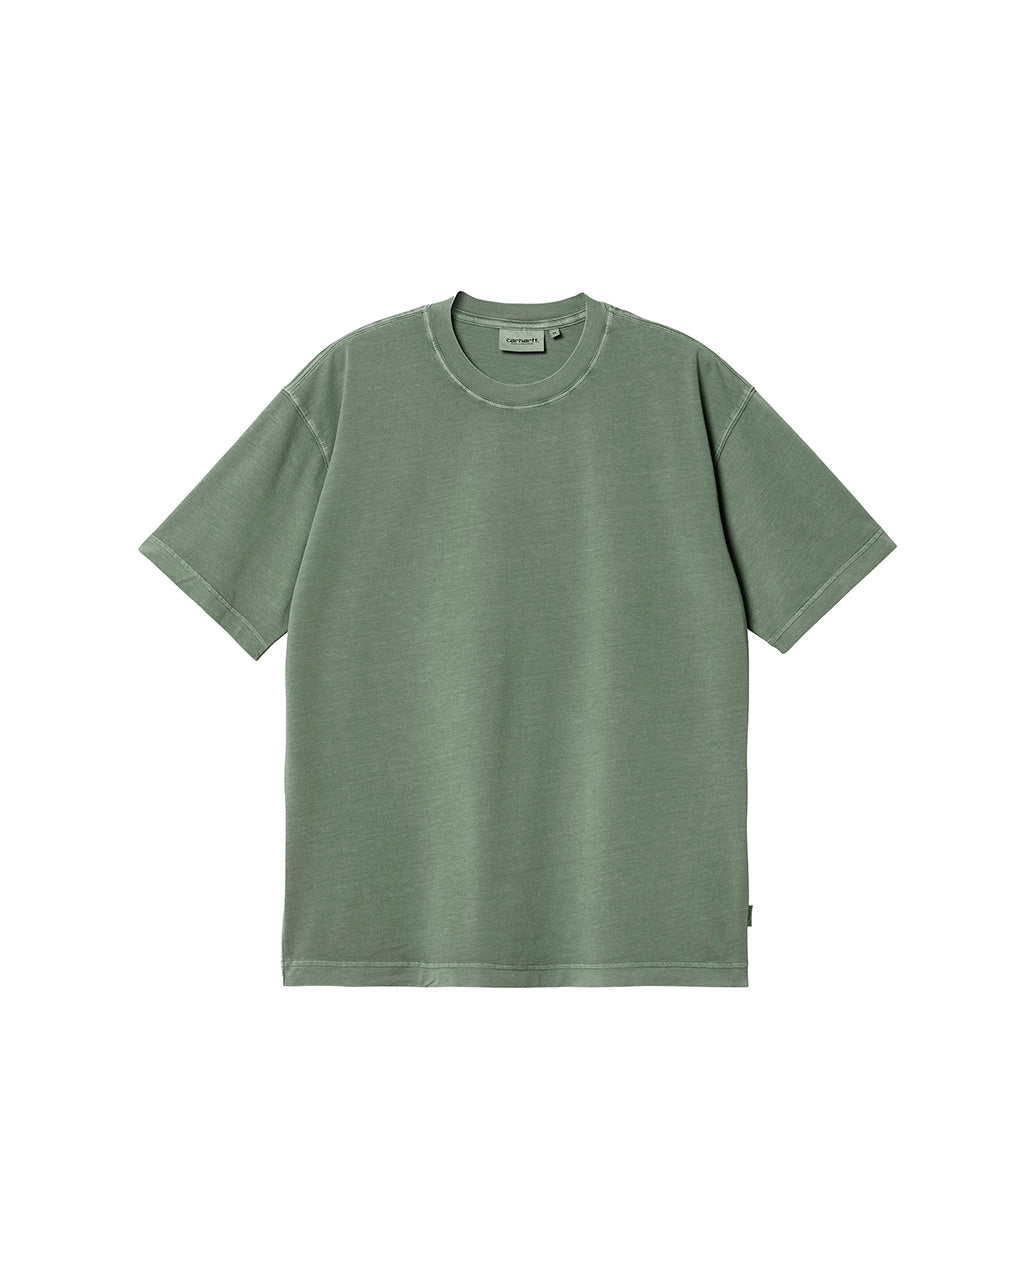 Carhartt WIP S/S Dune T-Shirt